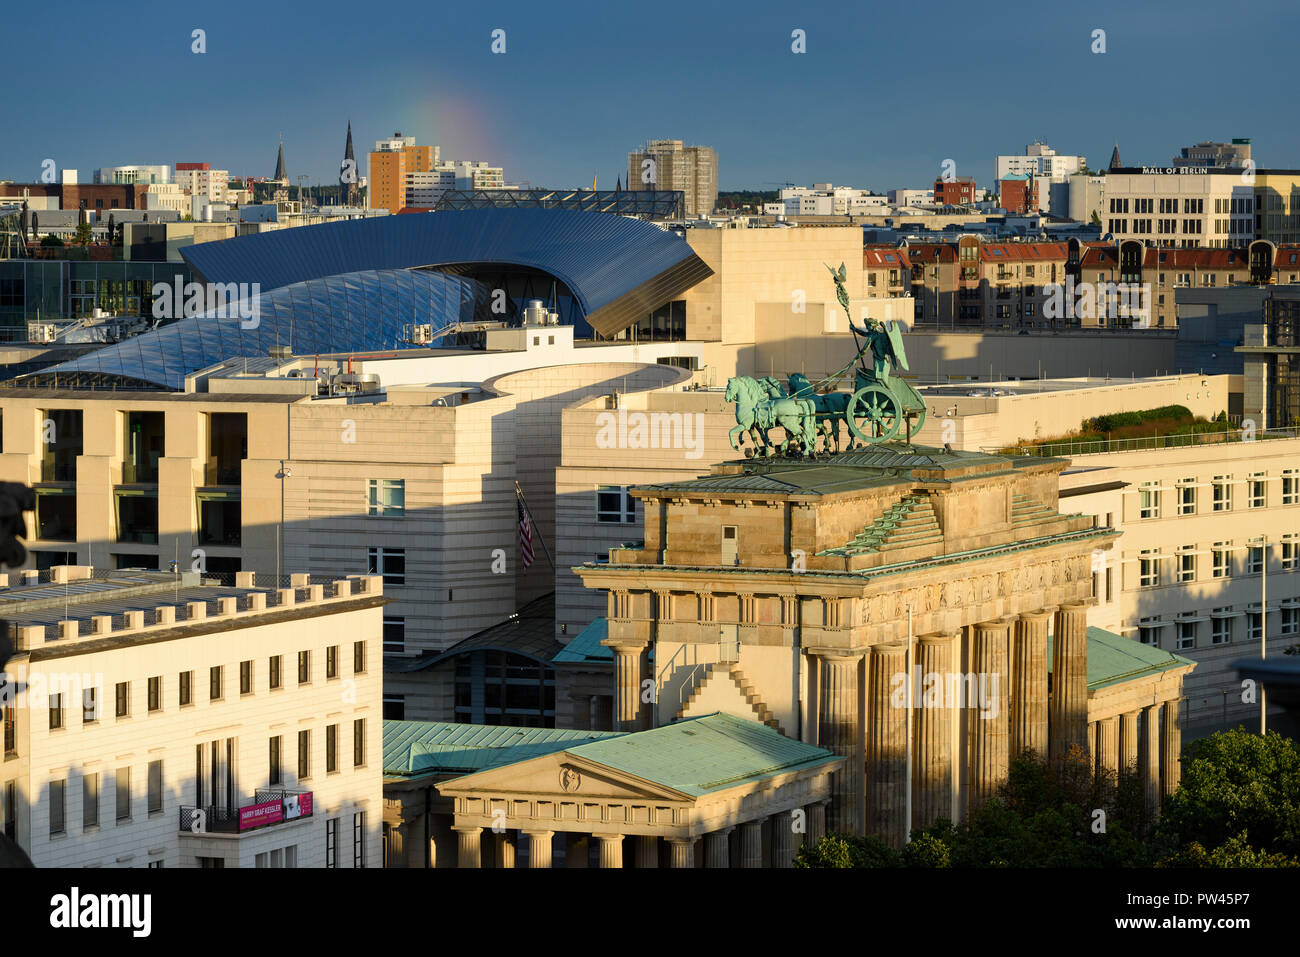 Berlin. Deutschland. Berliner Skyline mit erhöhten Blick auf das Brandenburger Tor (Brandenburger Tor) und Gebäude am Pariser Platz, das markante Glas r Stockfoto